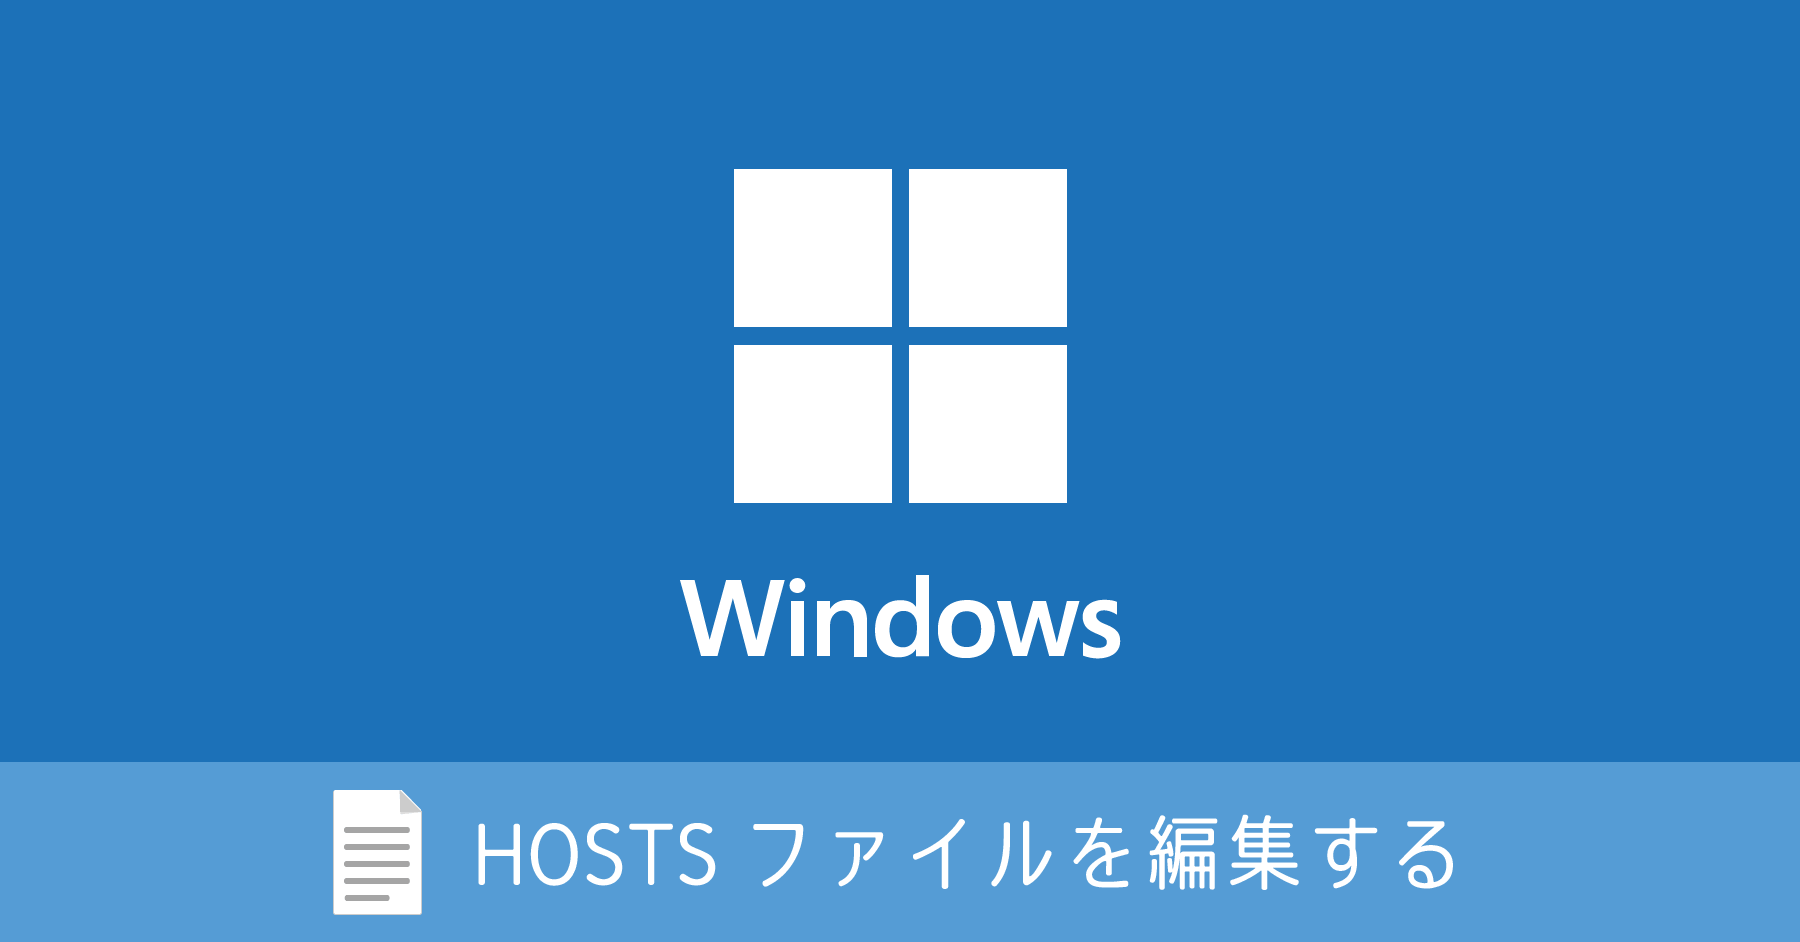 Windows 10 で Hosts ファイルを編集する方法